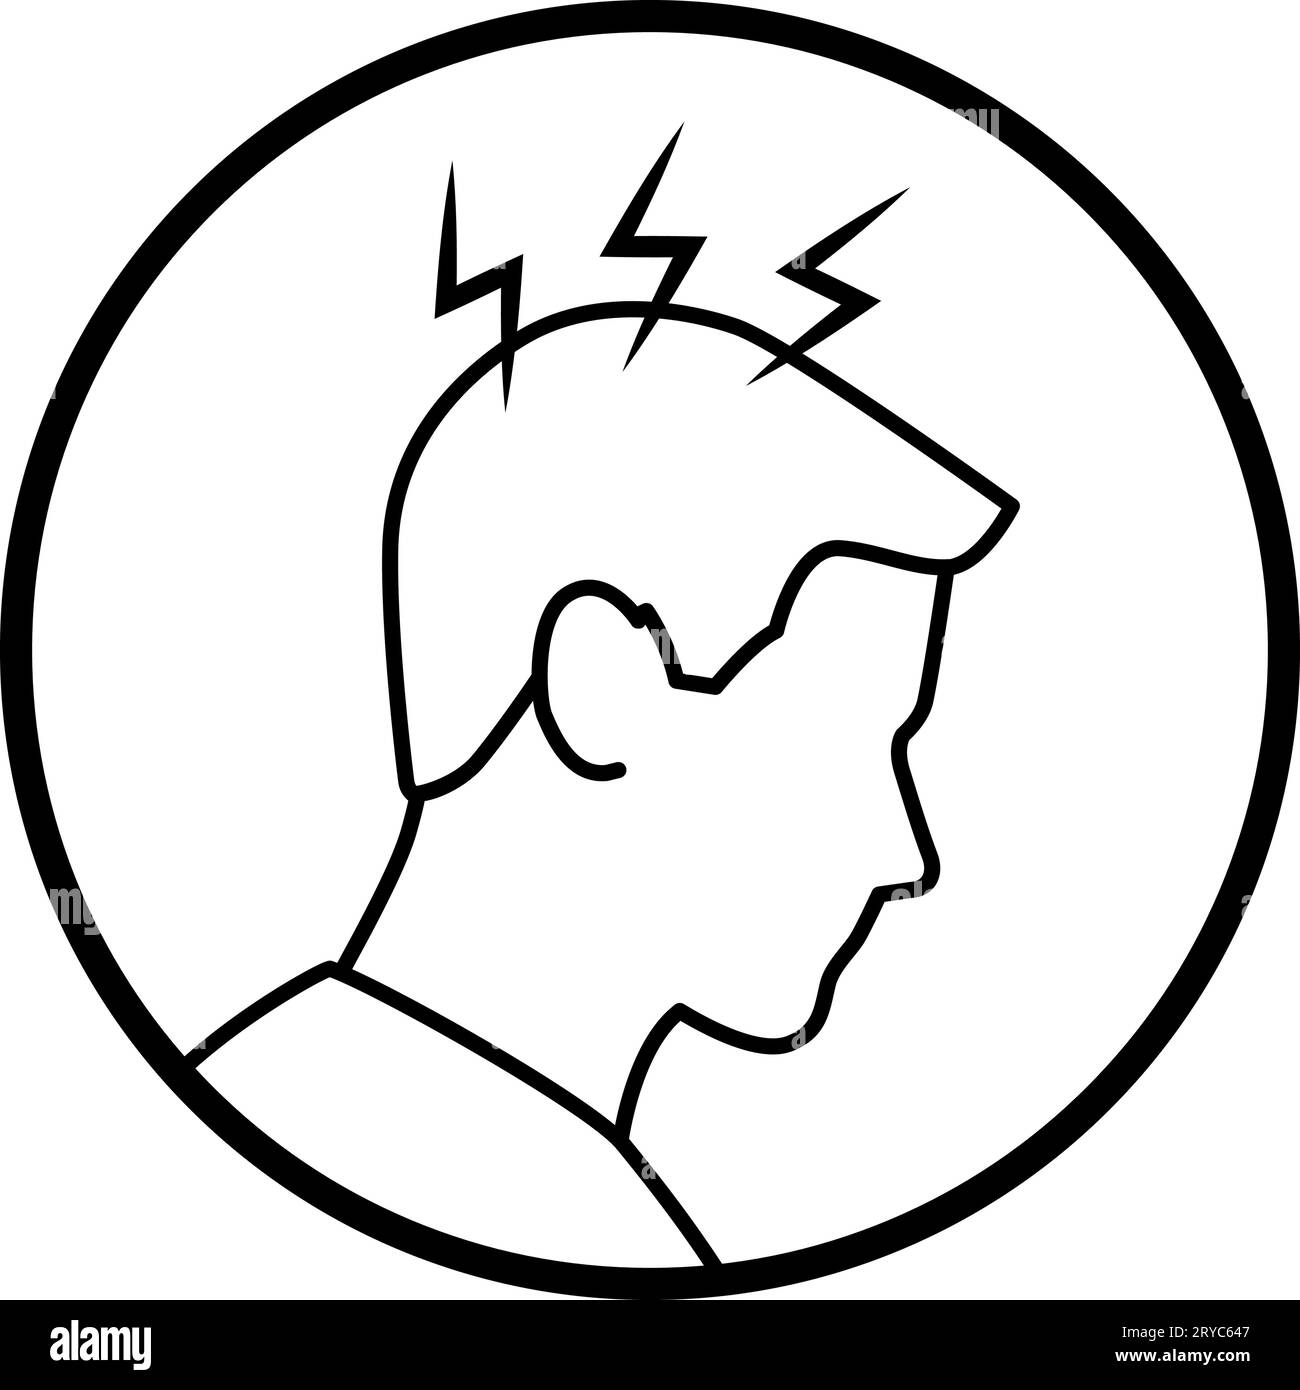 Uomo con mal di testa, icona medica isolata Illustrazione Vettoriale